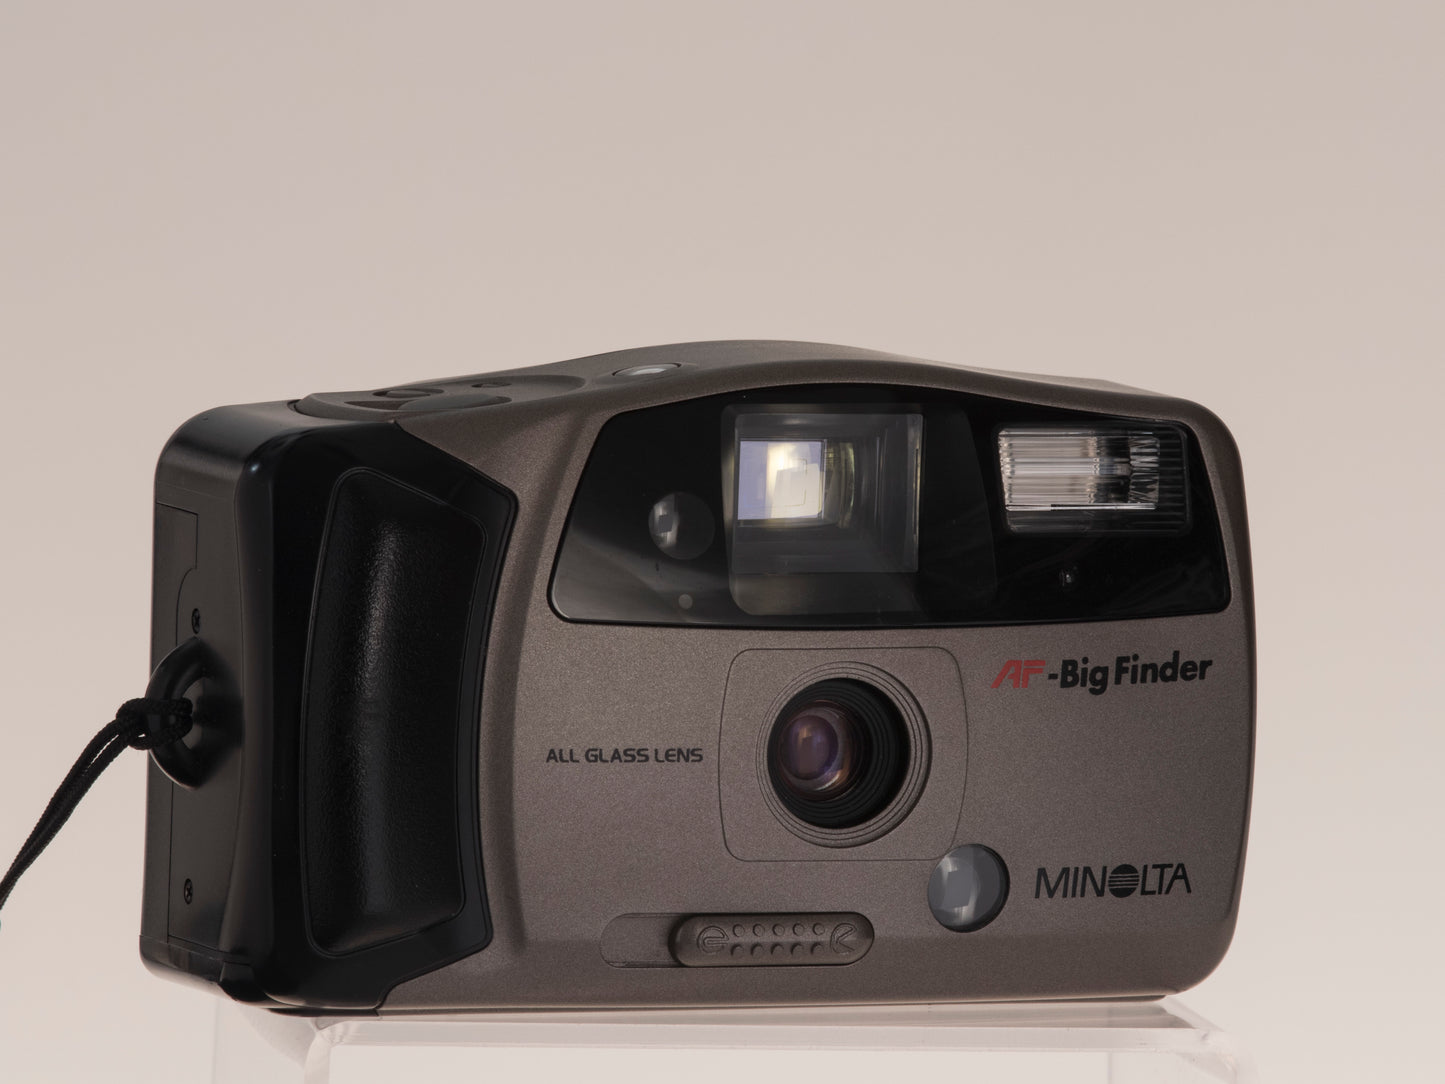 Minolta Freedom AF Big Finder 35mm camera